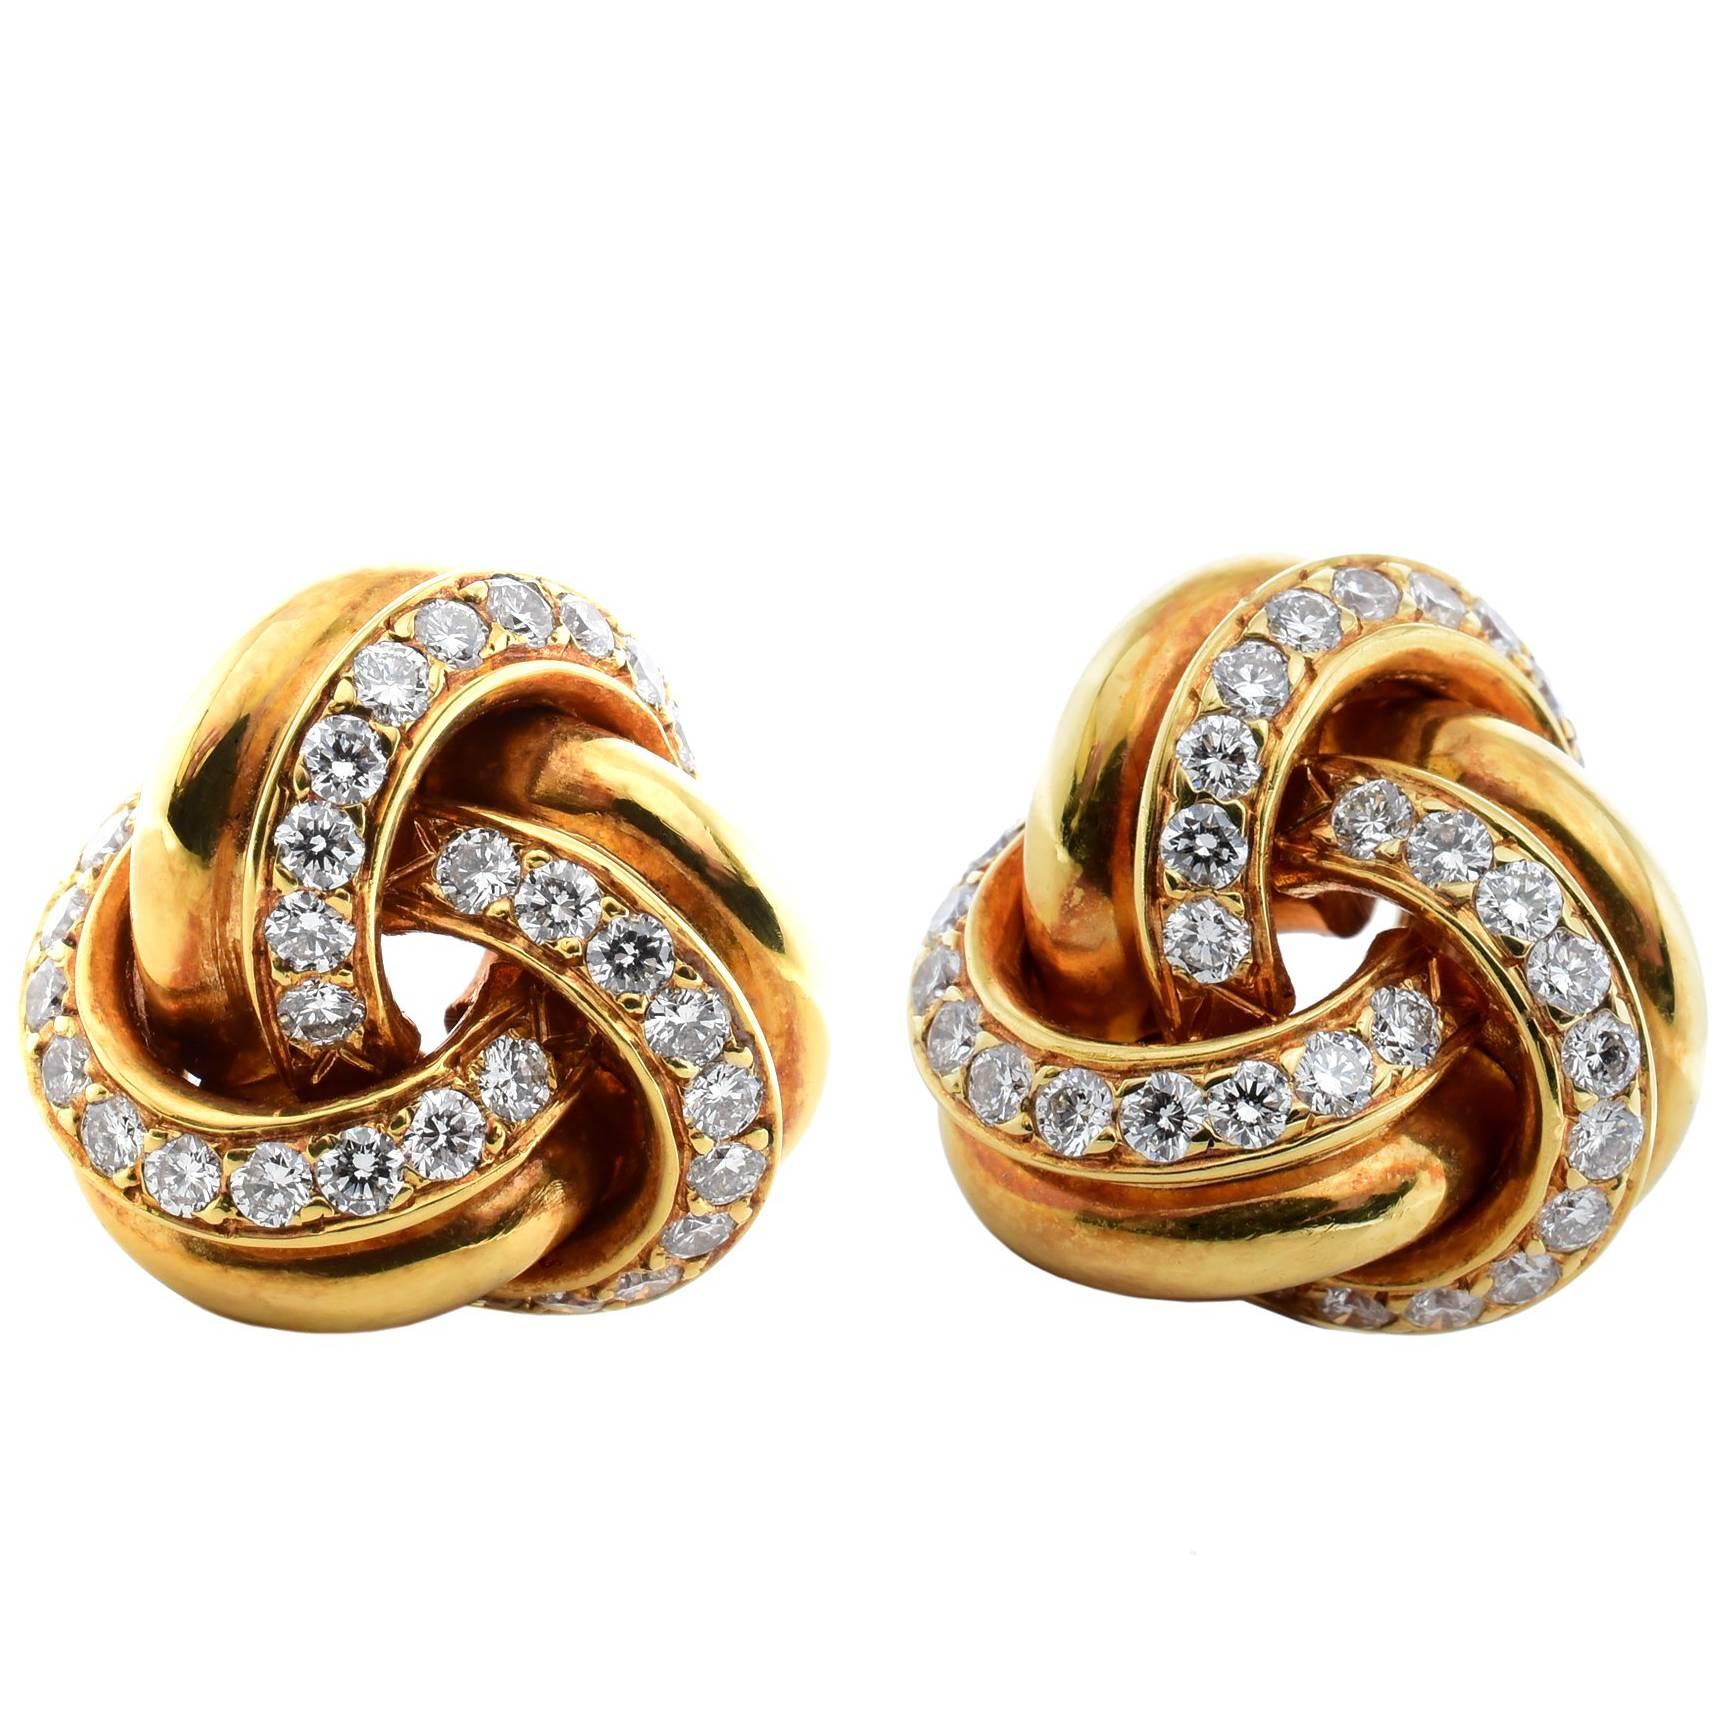 Tiffany & Co. Twist Knot Diamond 18 Karat Yellow Gold Earrings For Sale